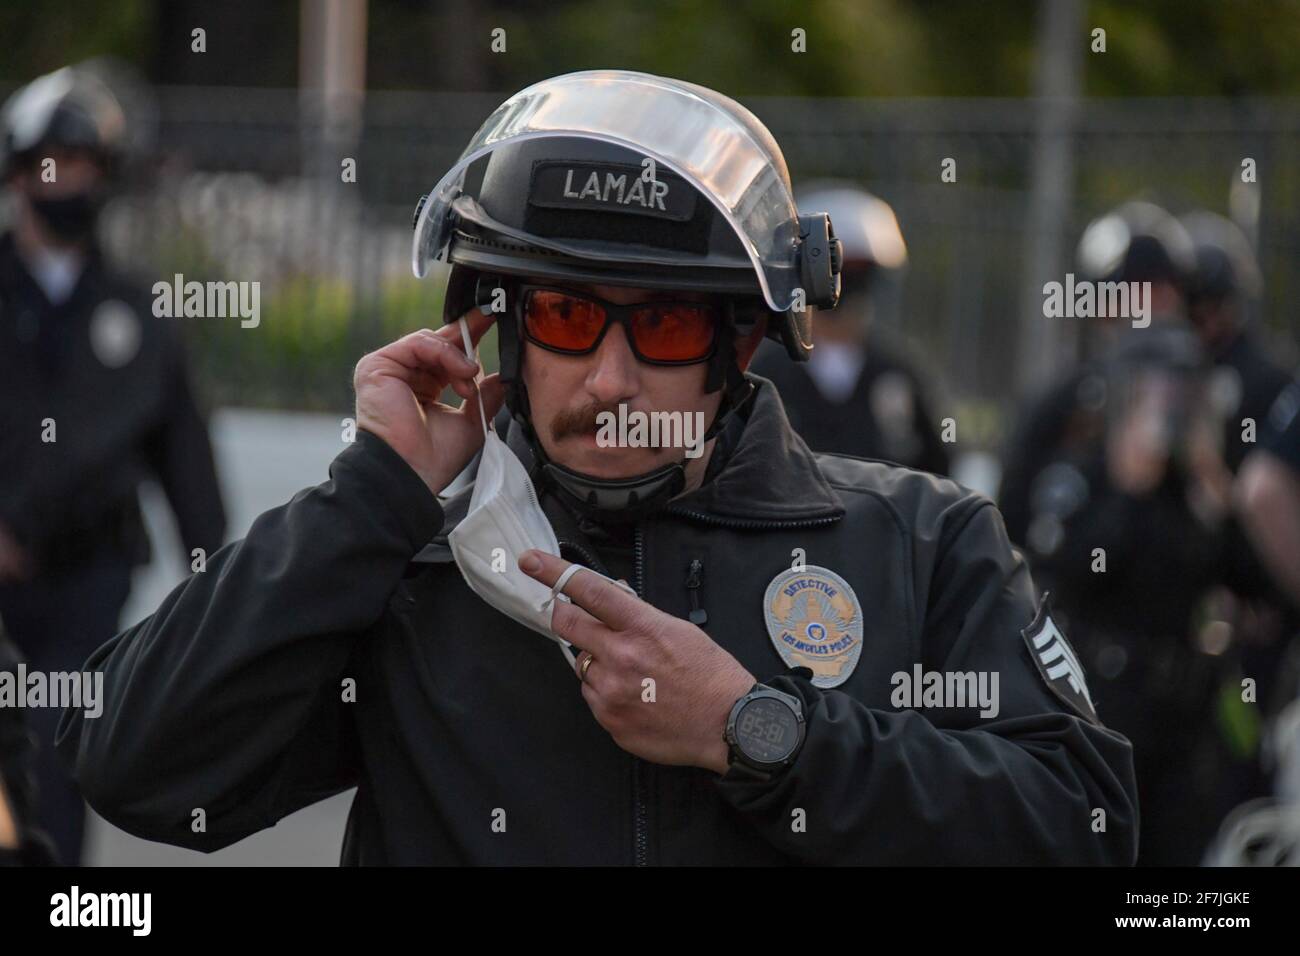 Il detective Lamar del Dipartimento di polizia di Los Angeles regola una copertura facciale mentre risponde a una protesta vicino al lago Echo Park, giovedì 25 marzo 2021 Foto Stock